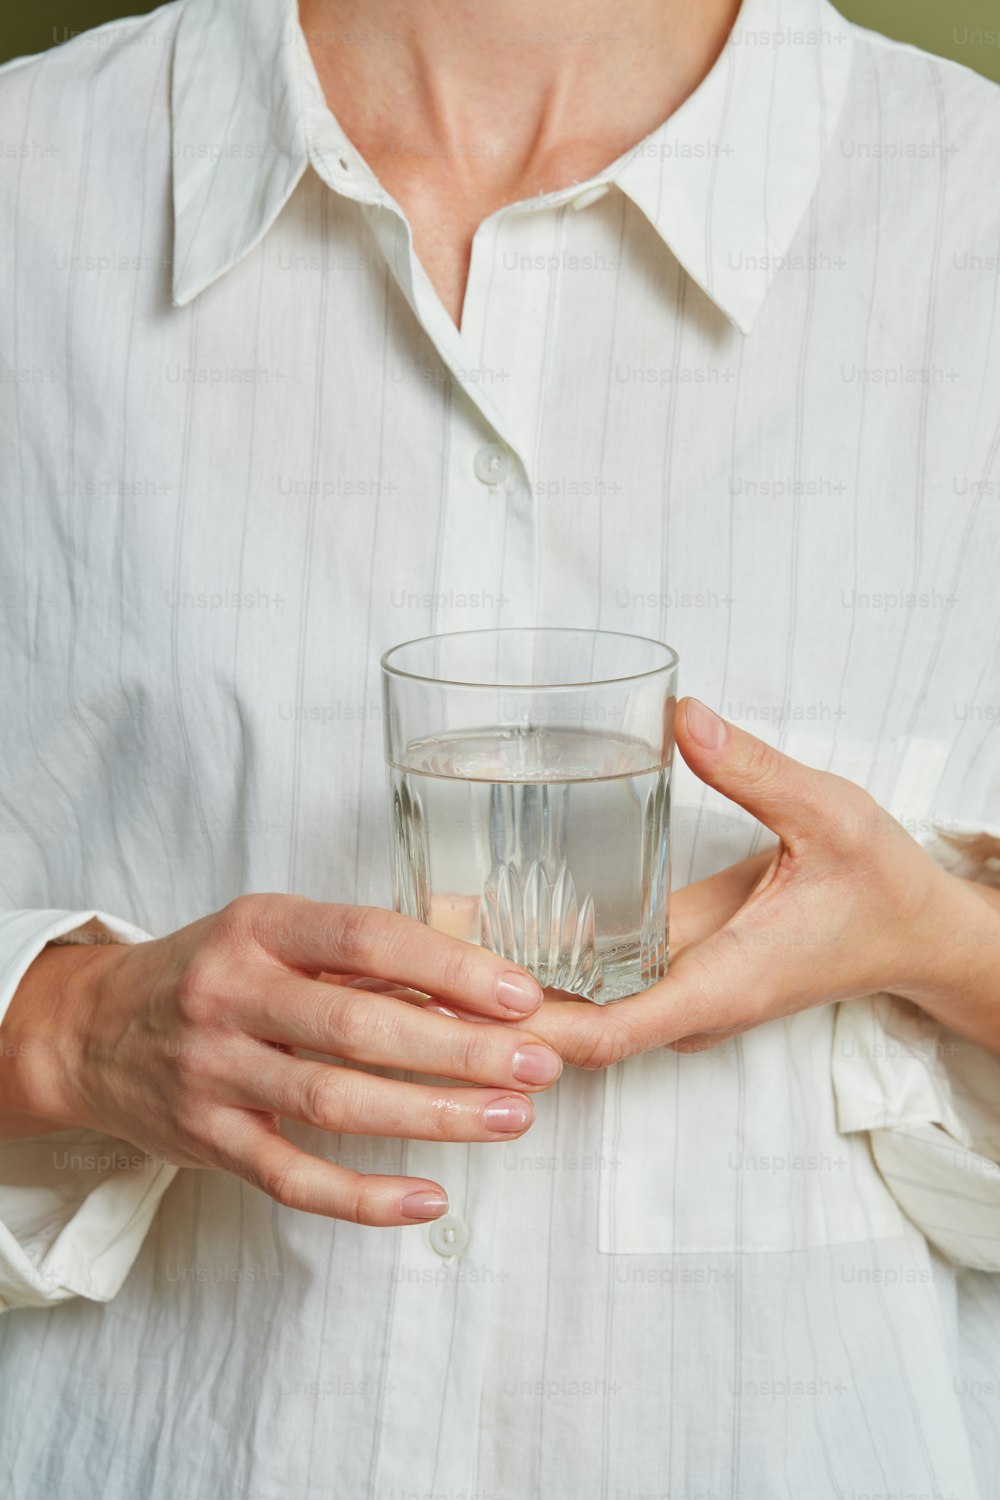 Un hombre sosteniendo un vaso de agua